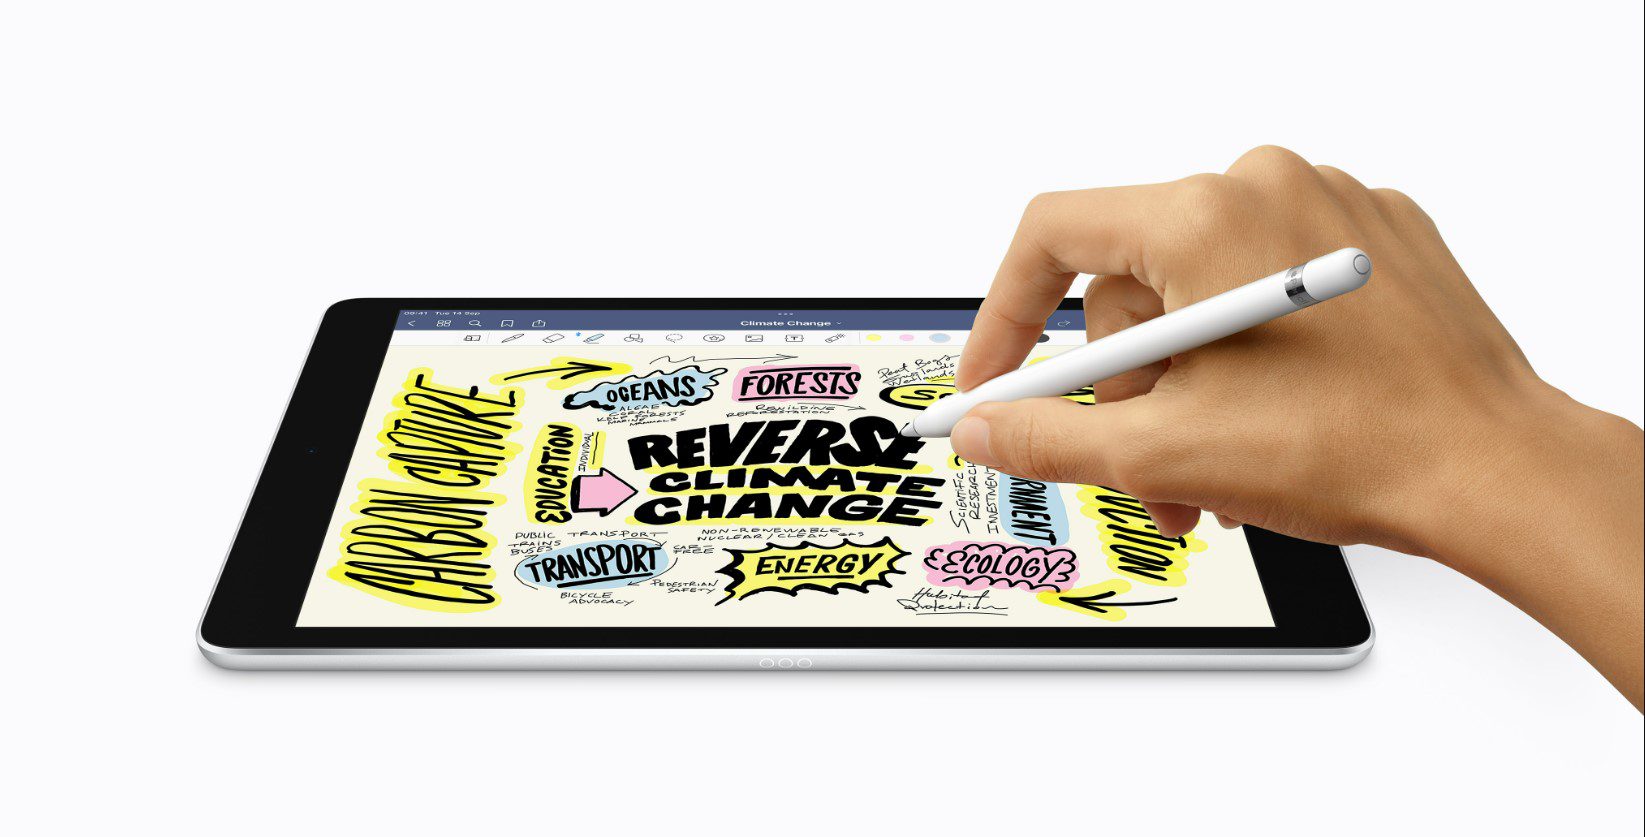 Freihandzeichnen auf dem iPad 10.2 mit dem Apple Pencil